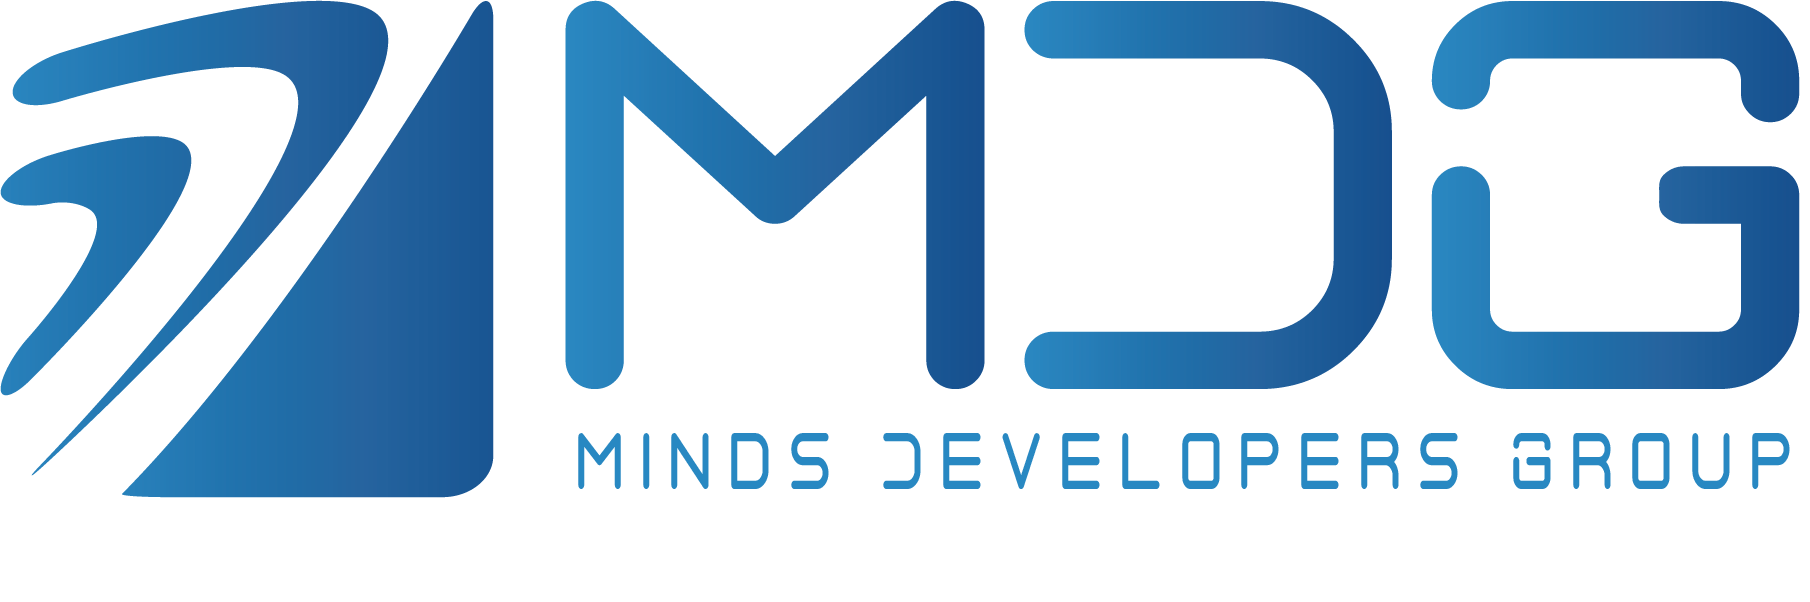 Minds Developers Group Logo